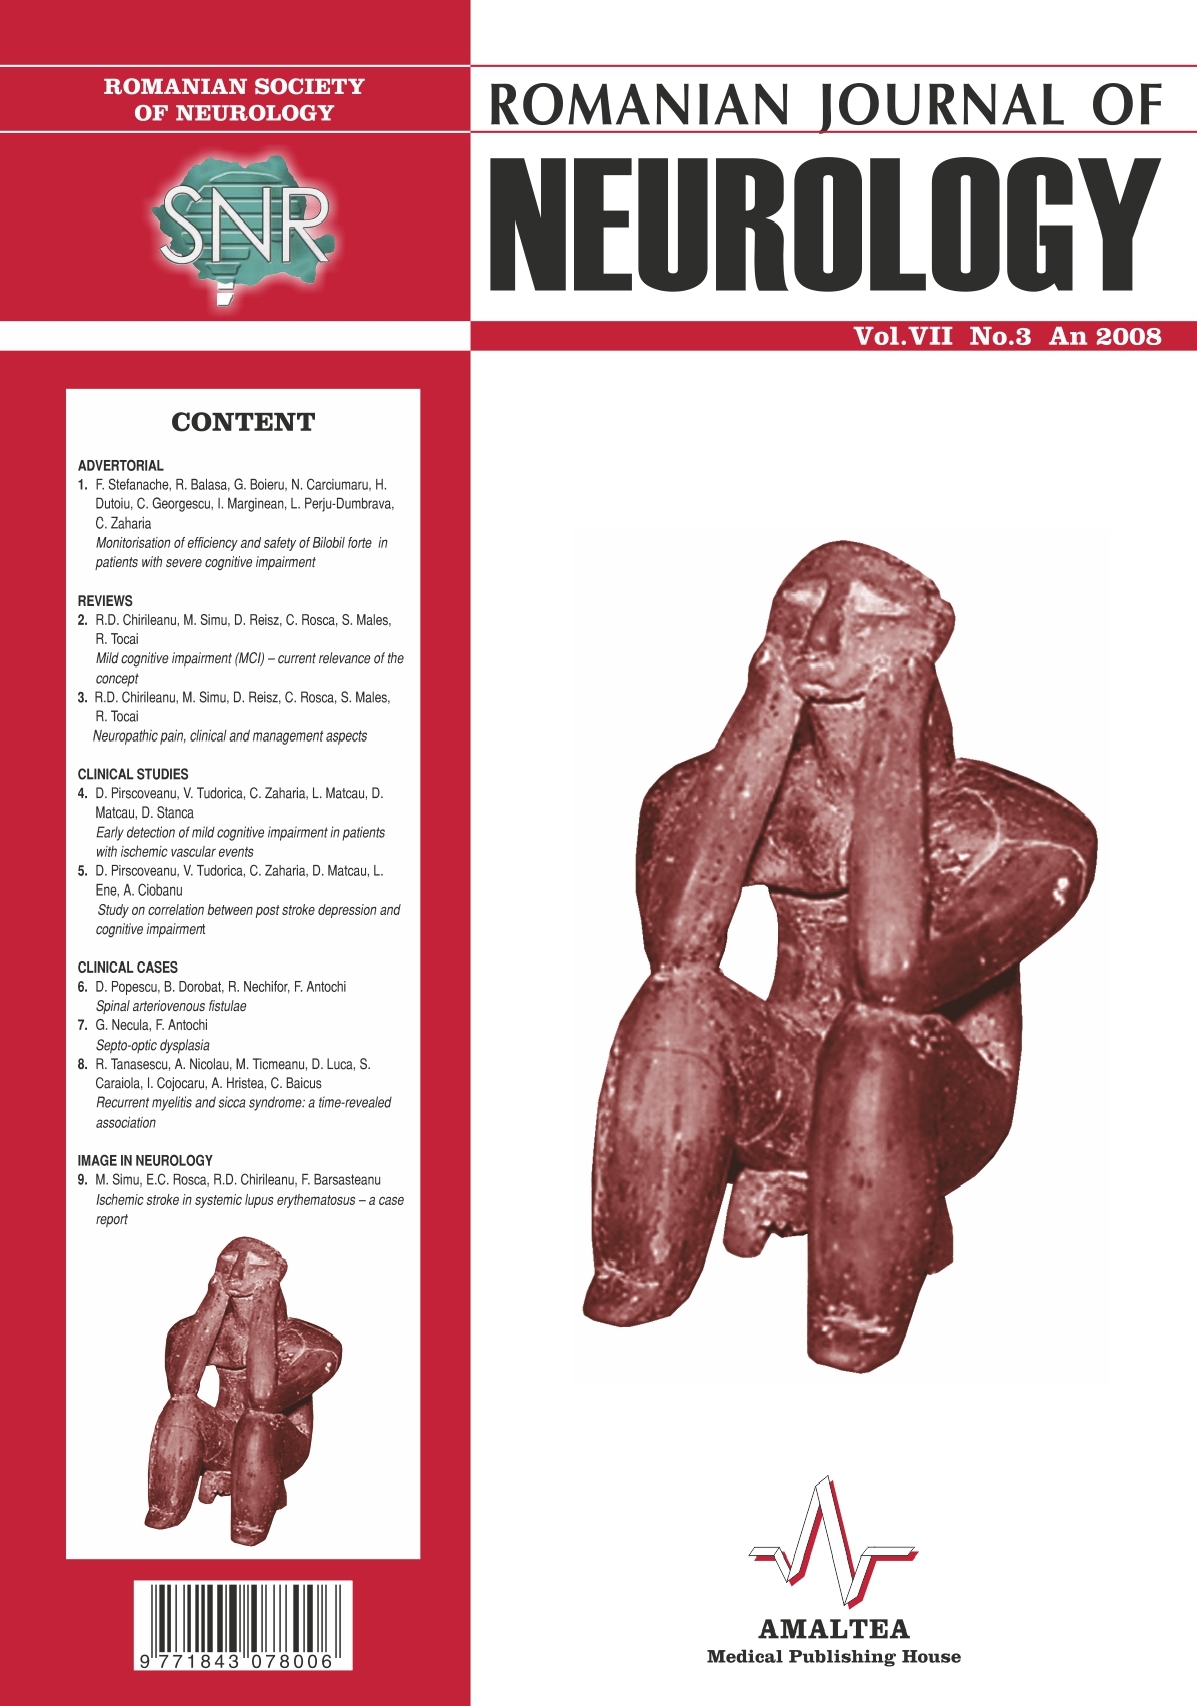 Romanian Journal of Neurology, Volume VII, No. 3, 2008